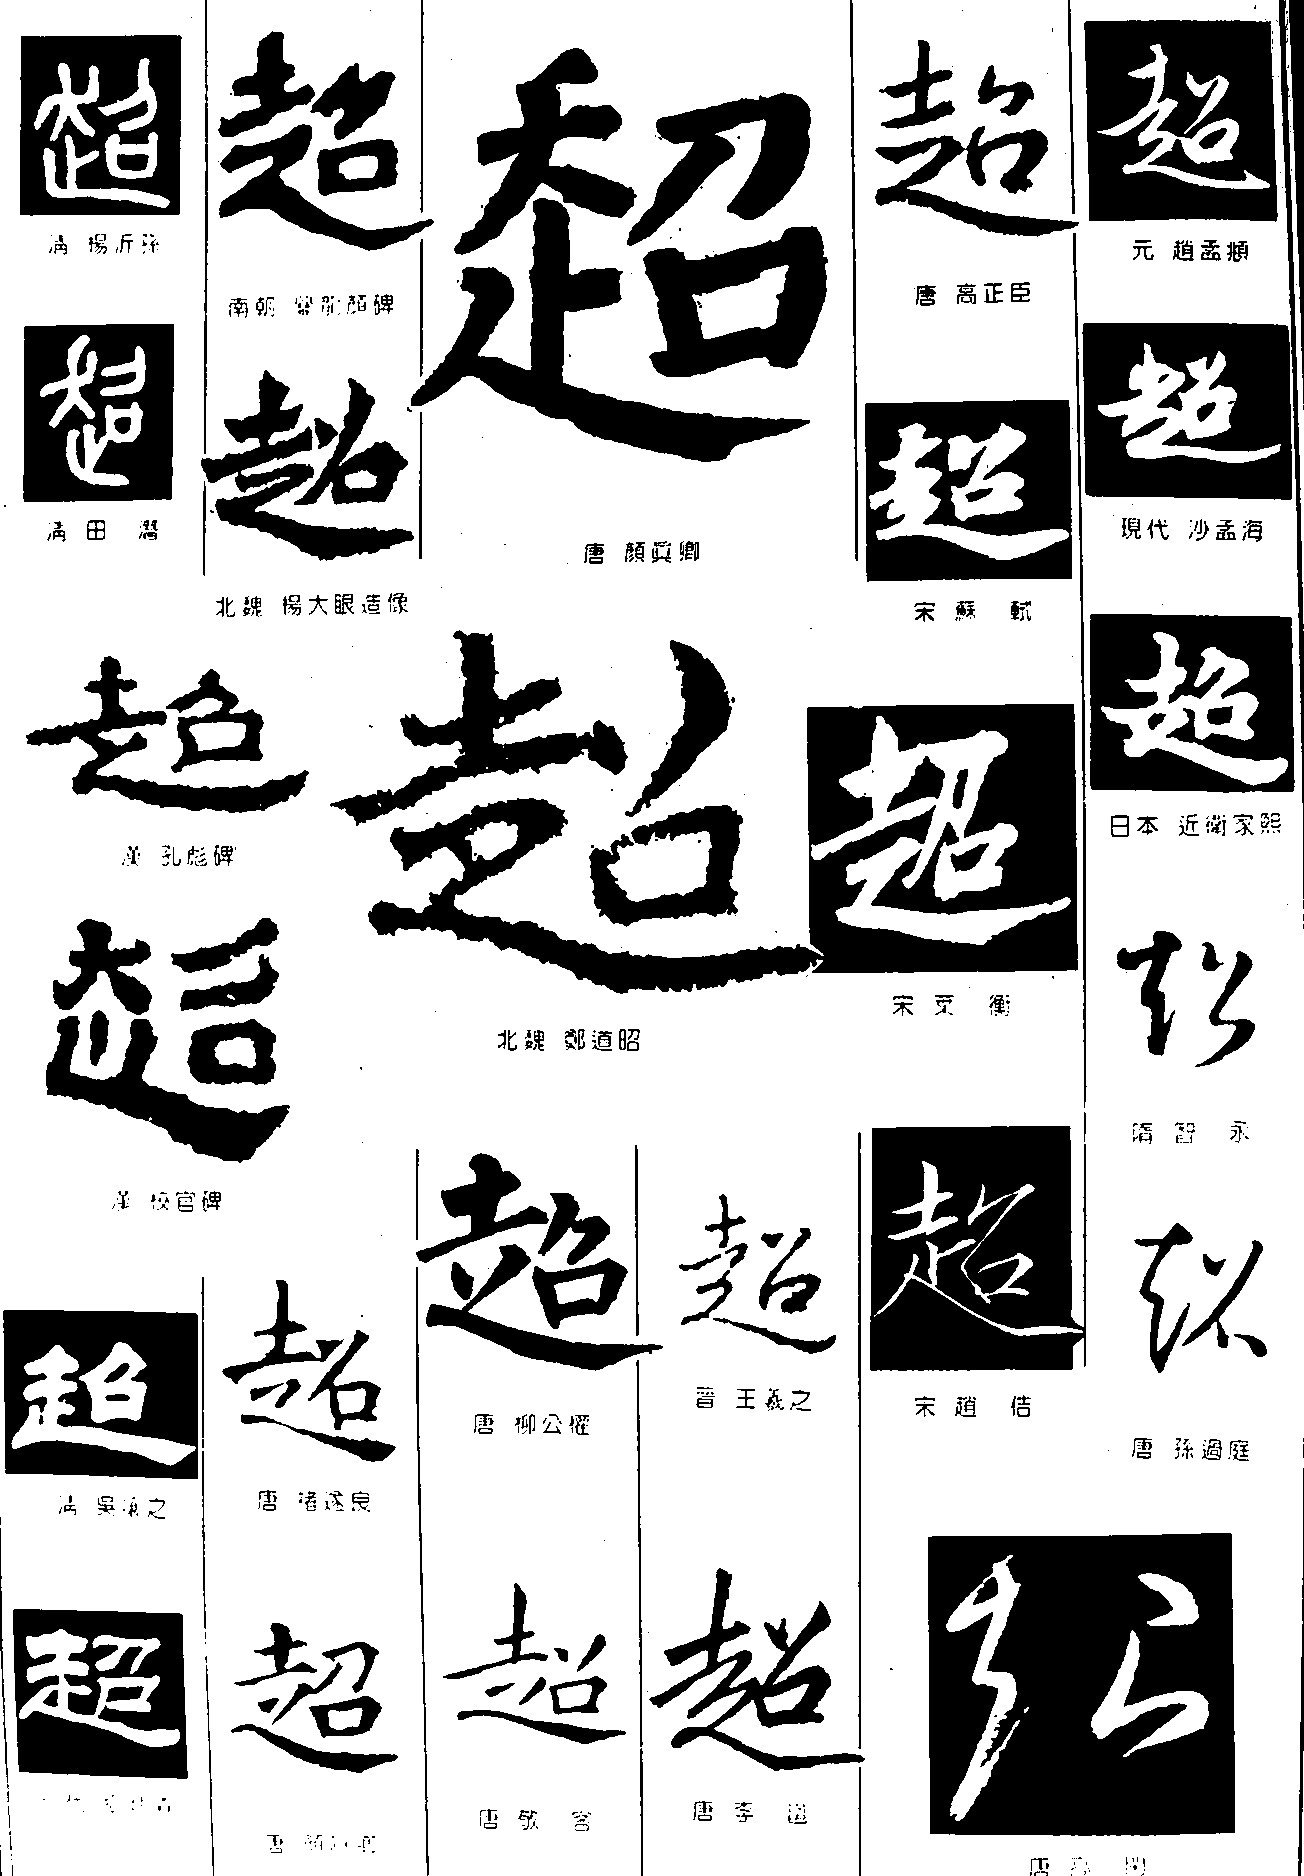 超_书法字体_字体设计作品-中国字体设计网_ziti.